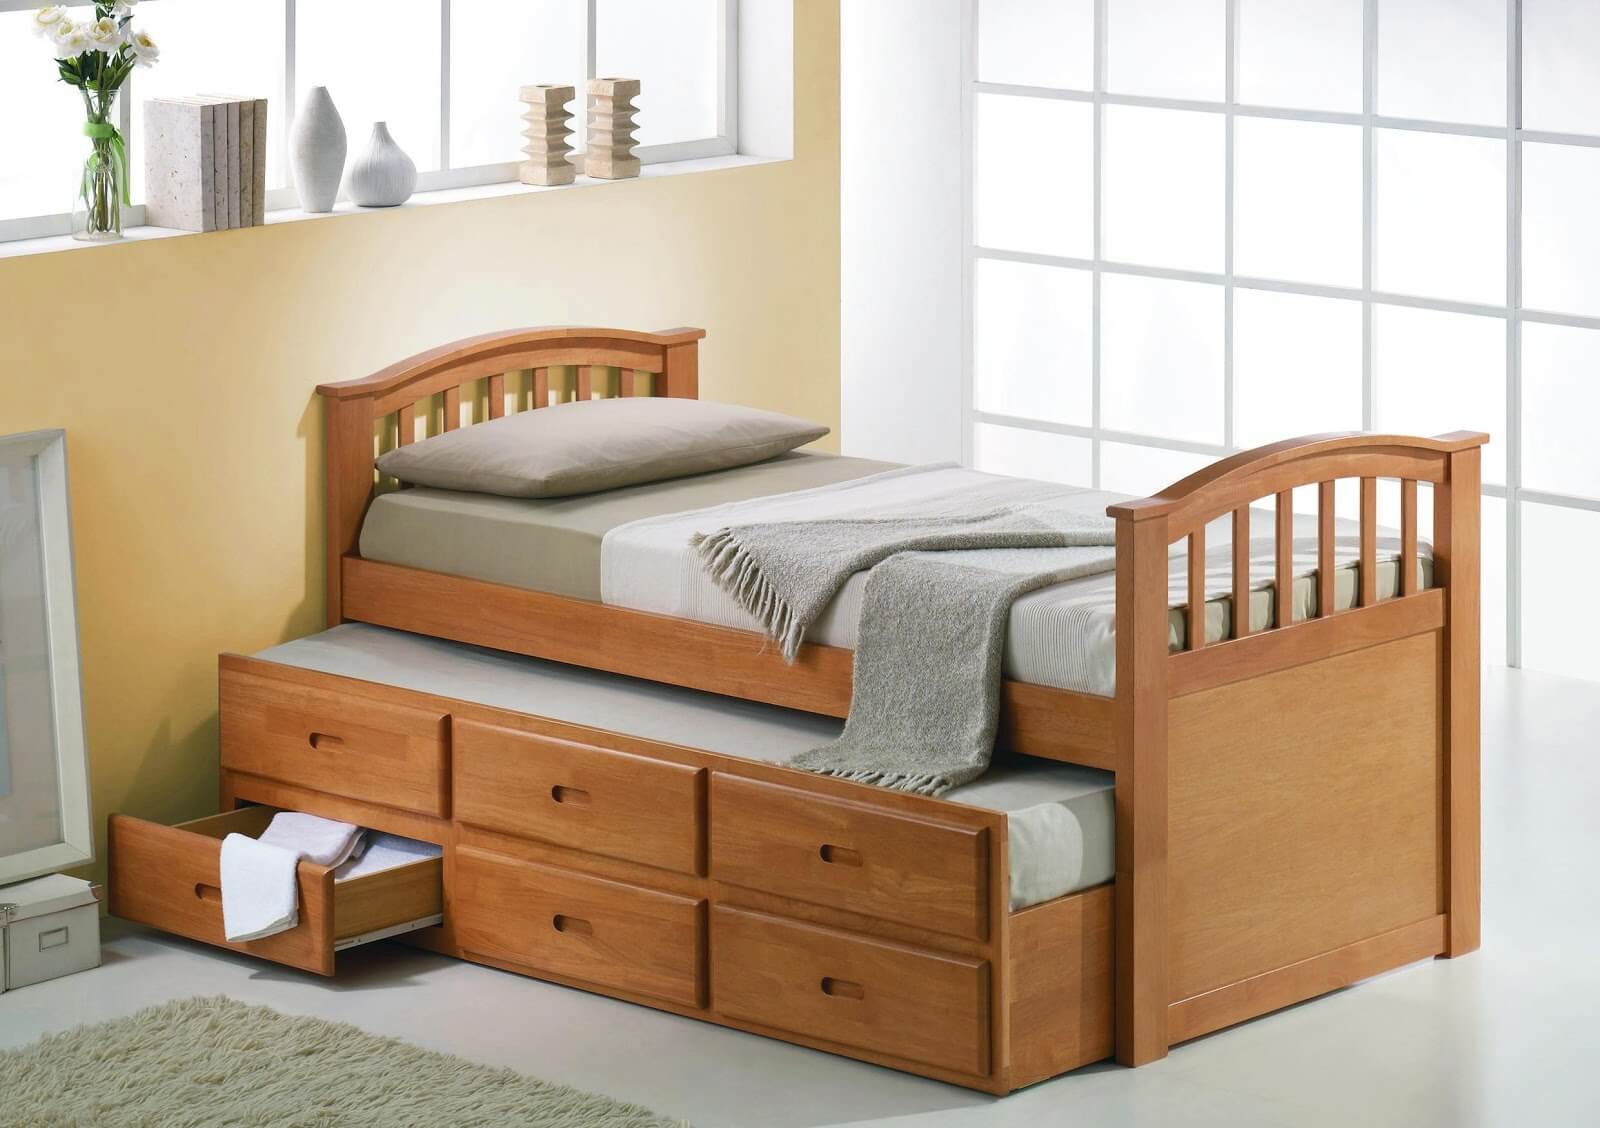 Детские полуторки. Кровать для детей. Кровать для подростка. Односпальная кровать с выдвижными ящиками. Односпальные кровати для детей.